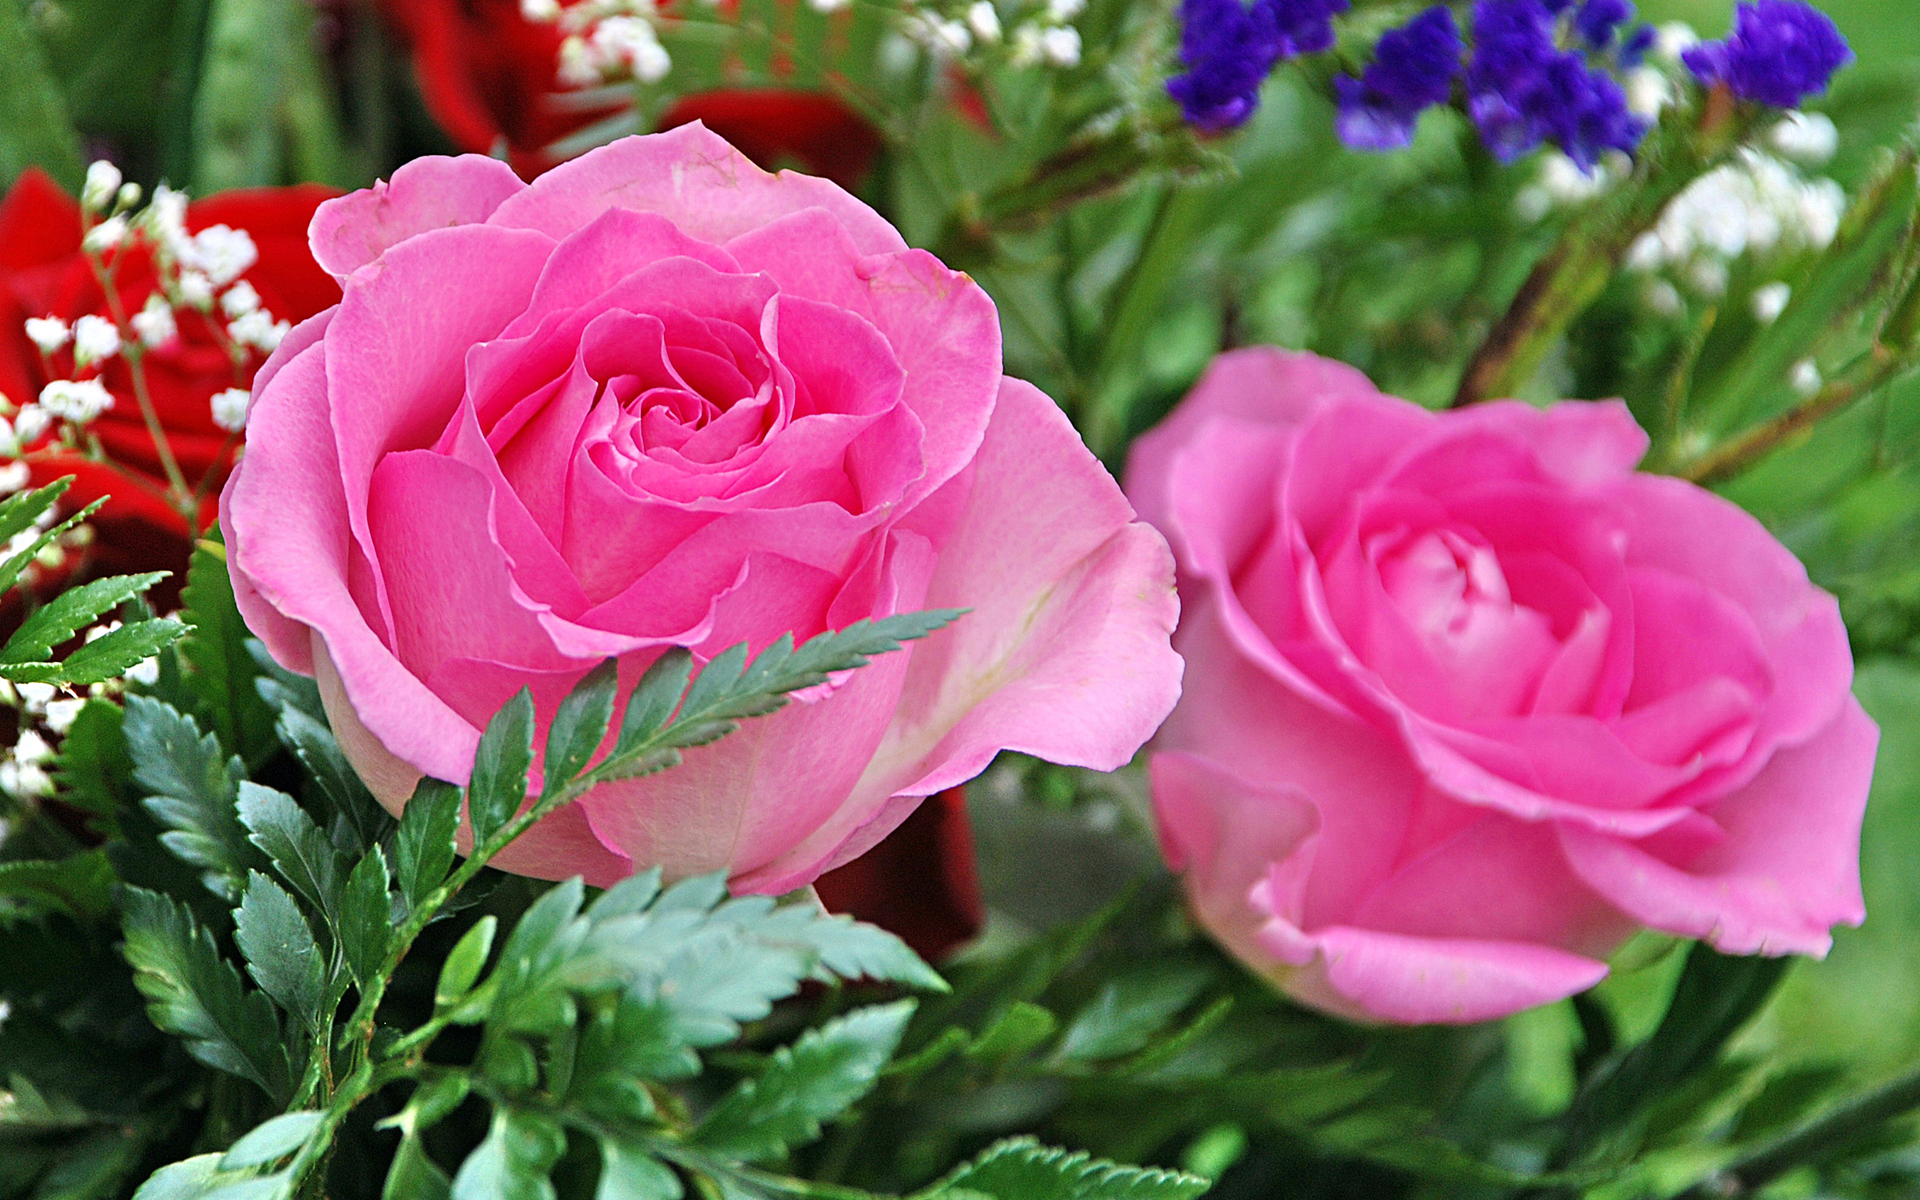 277373 Salvapantallas y fondos de pantalla Rosa en tu teléfono. Descarga imágenes de rosa rosada, flor, tierra/naturaleza, flores gratis